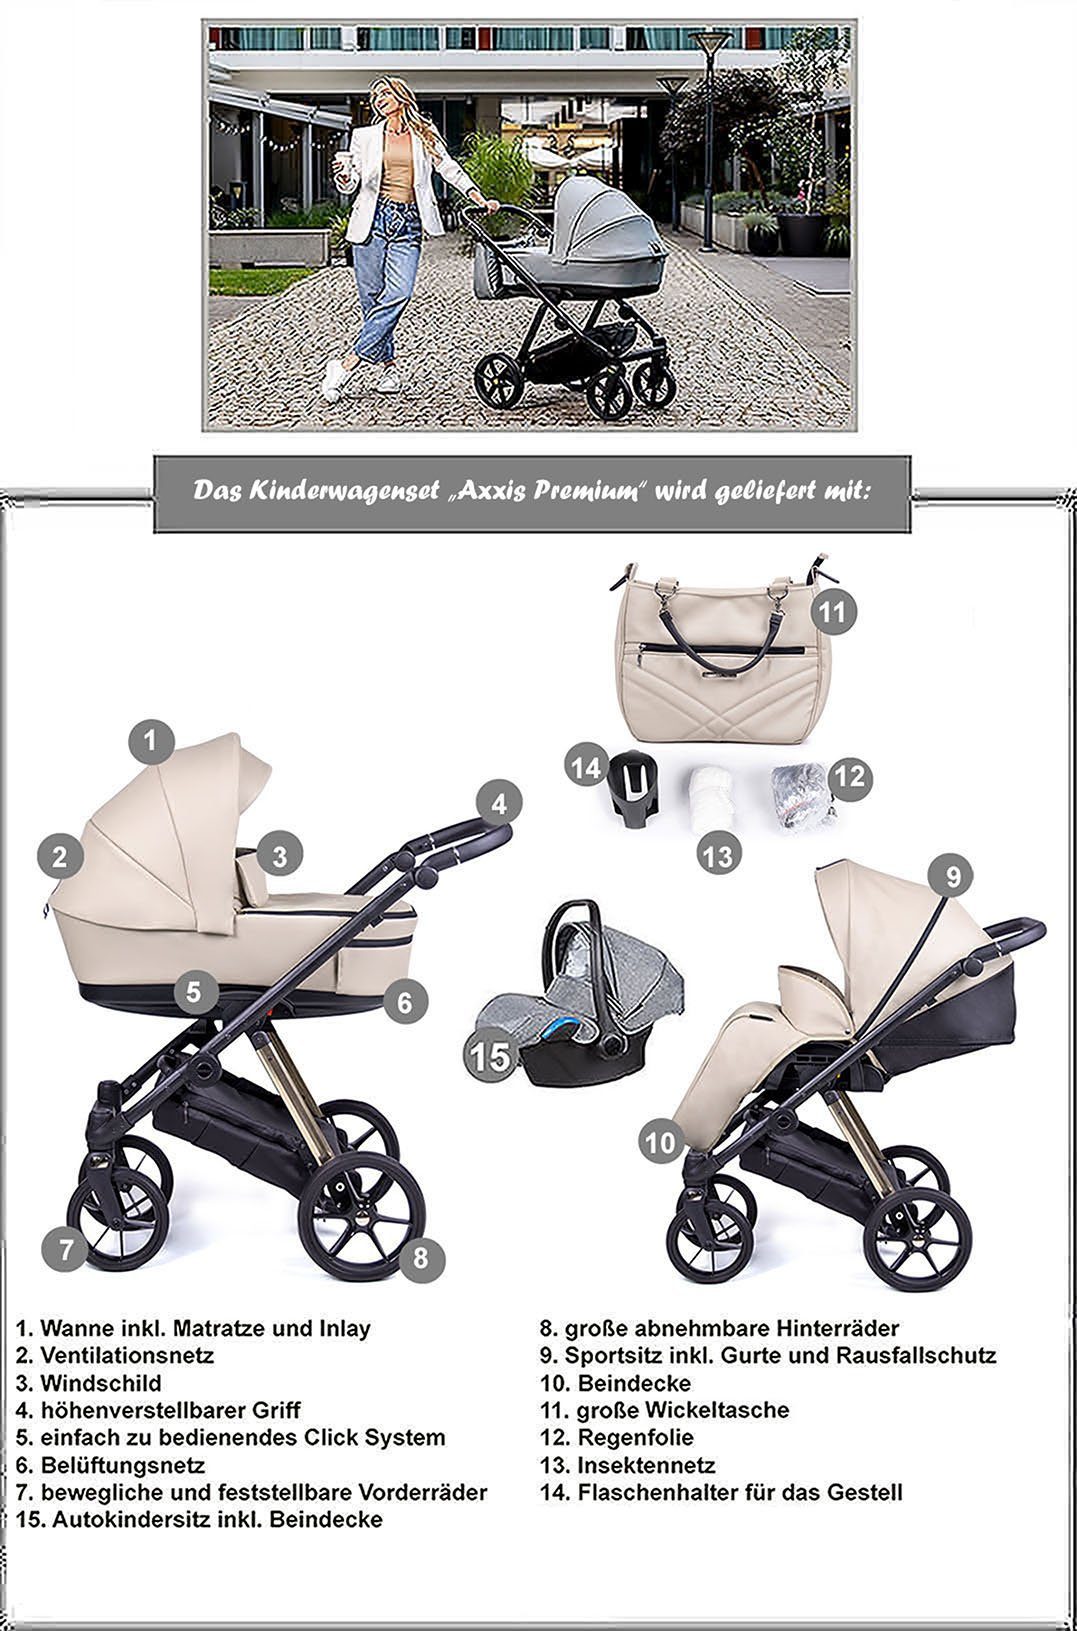 Designs Premium babies-on-wheels in in Kombi-Kinderwagen 1 15 - 3 Braun Axxis = - 12 Kinderwagen-Set Gestell Teile gold